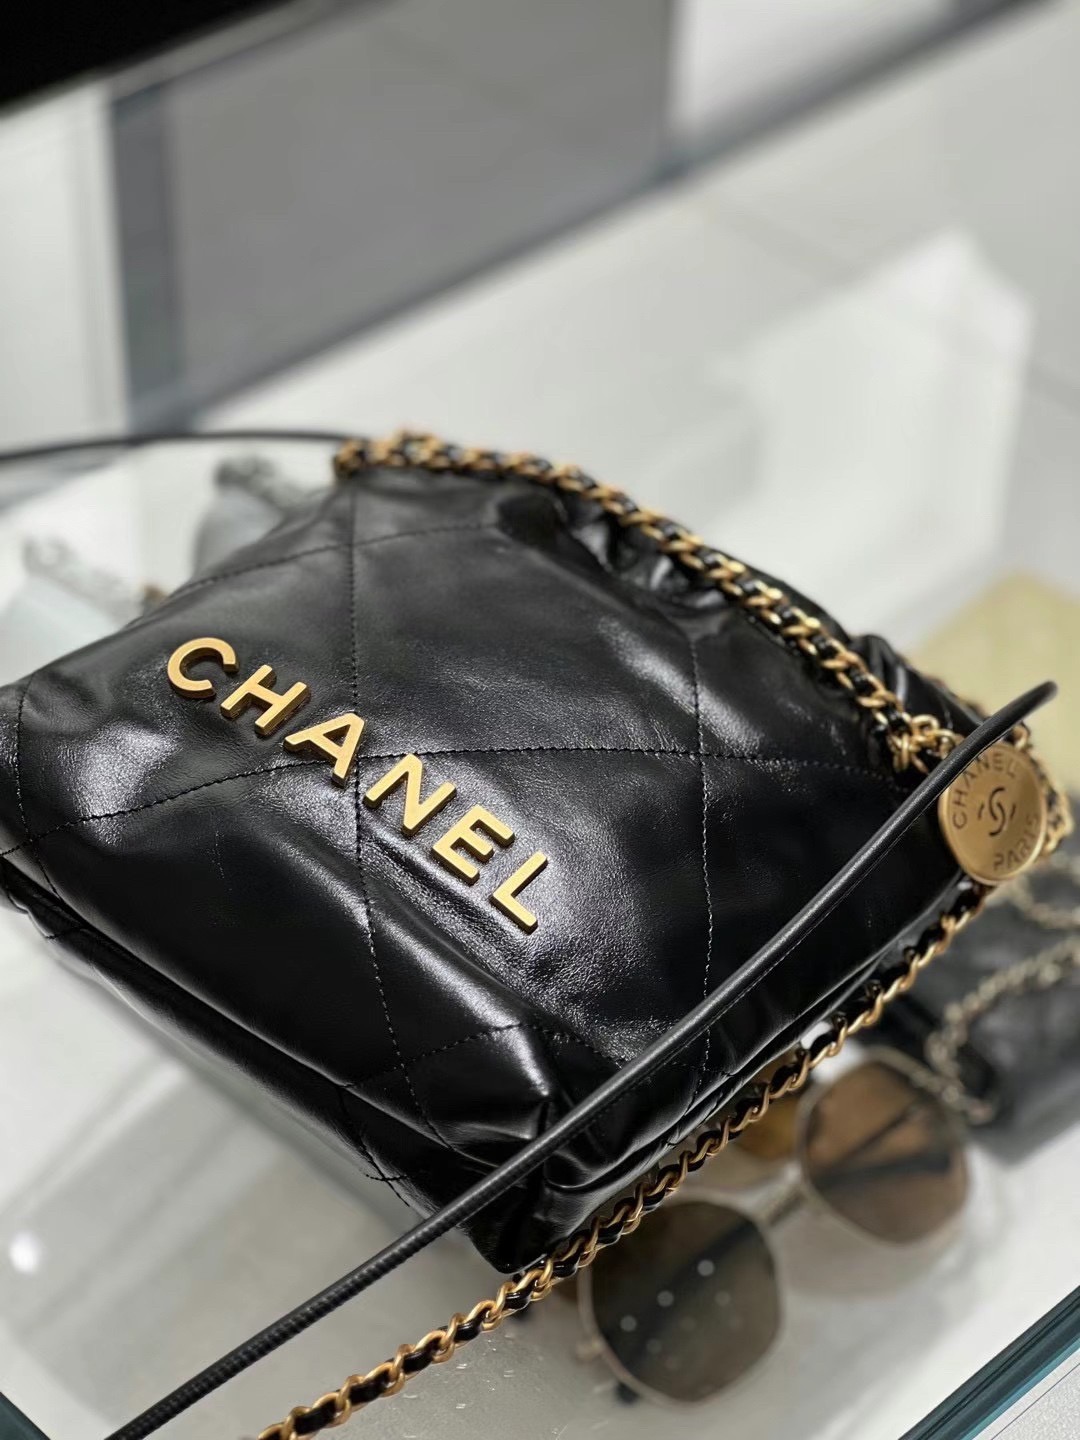 How to replica Chanel 22 bag mini？（2023 updated）-ఉత్తమ నాణ్యత నకిలీ లూయిస్ విట్టన్ బ్యాగ్ ఆన్‌లైన్ స్టోర్, రెప్లికా డిజైనర్ బ్యాగ్ రు